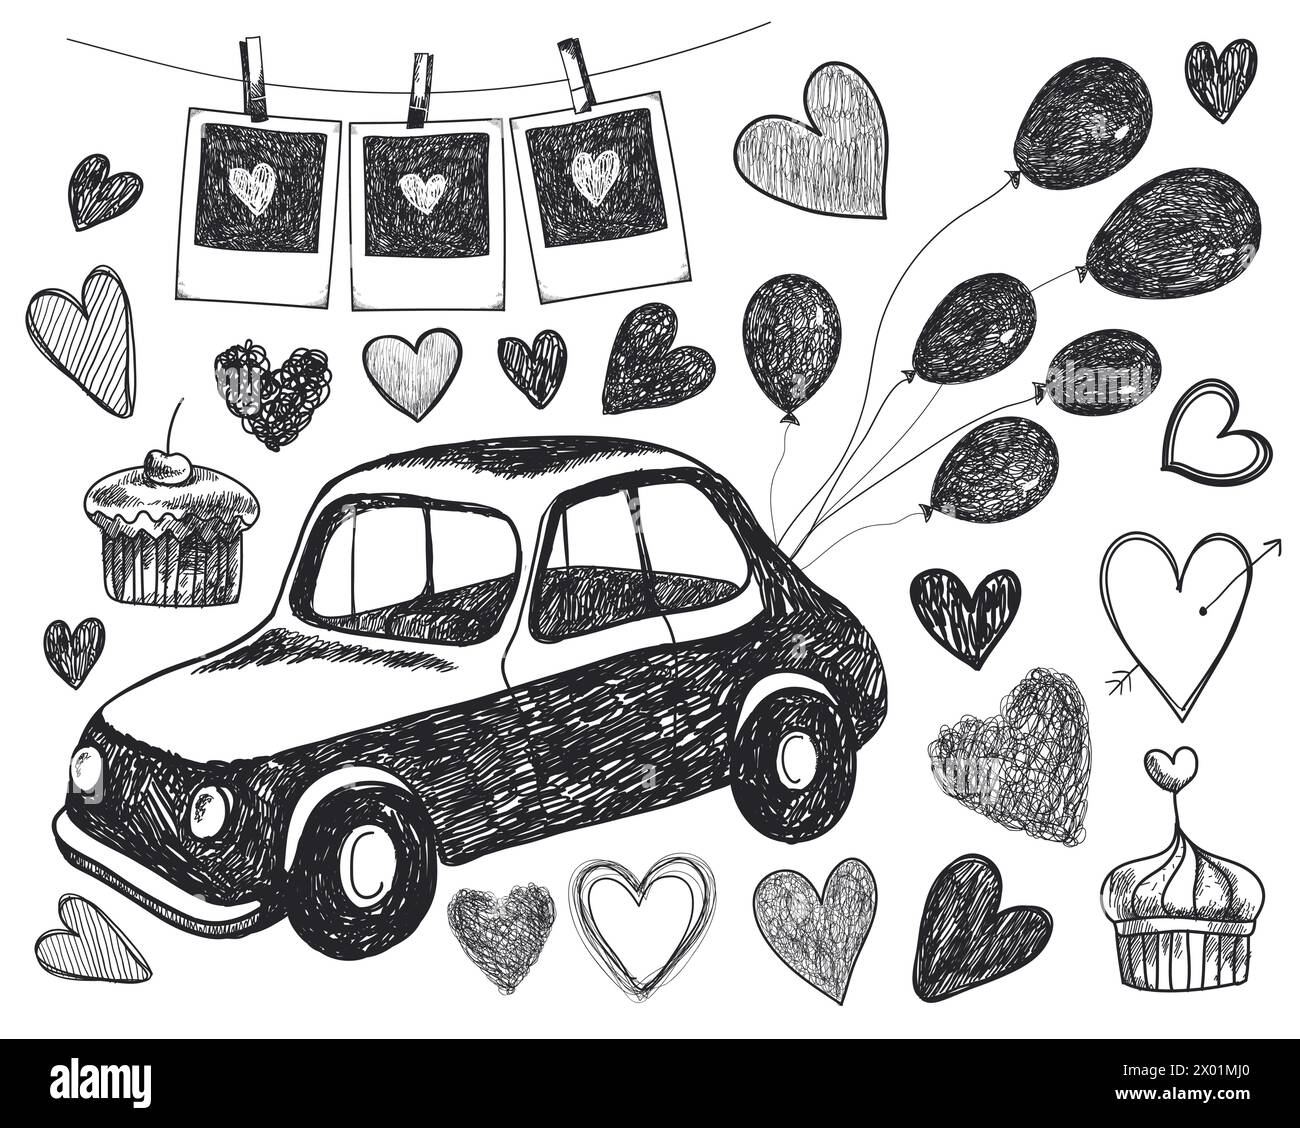 Vektor-Doodle-Hochzeit, romantisch, Liebesillustration. Set aus schwarz-weißen Elementen, Retro-Karte, Luftballons, Herzen, Kuchen, Bilder, Speichern Sie das Datum Stock Vektor